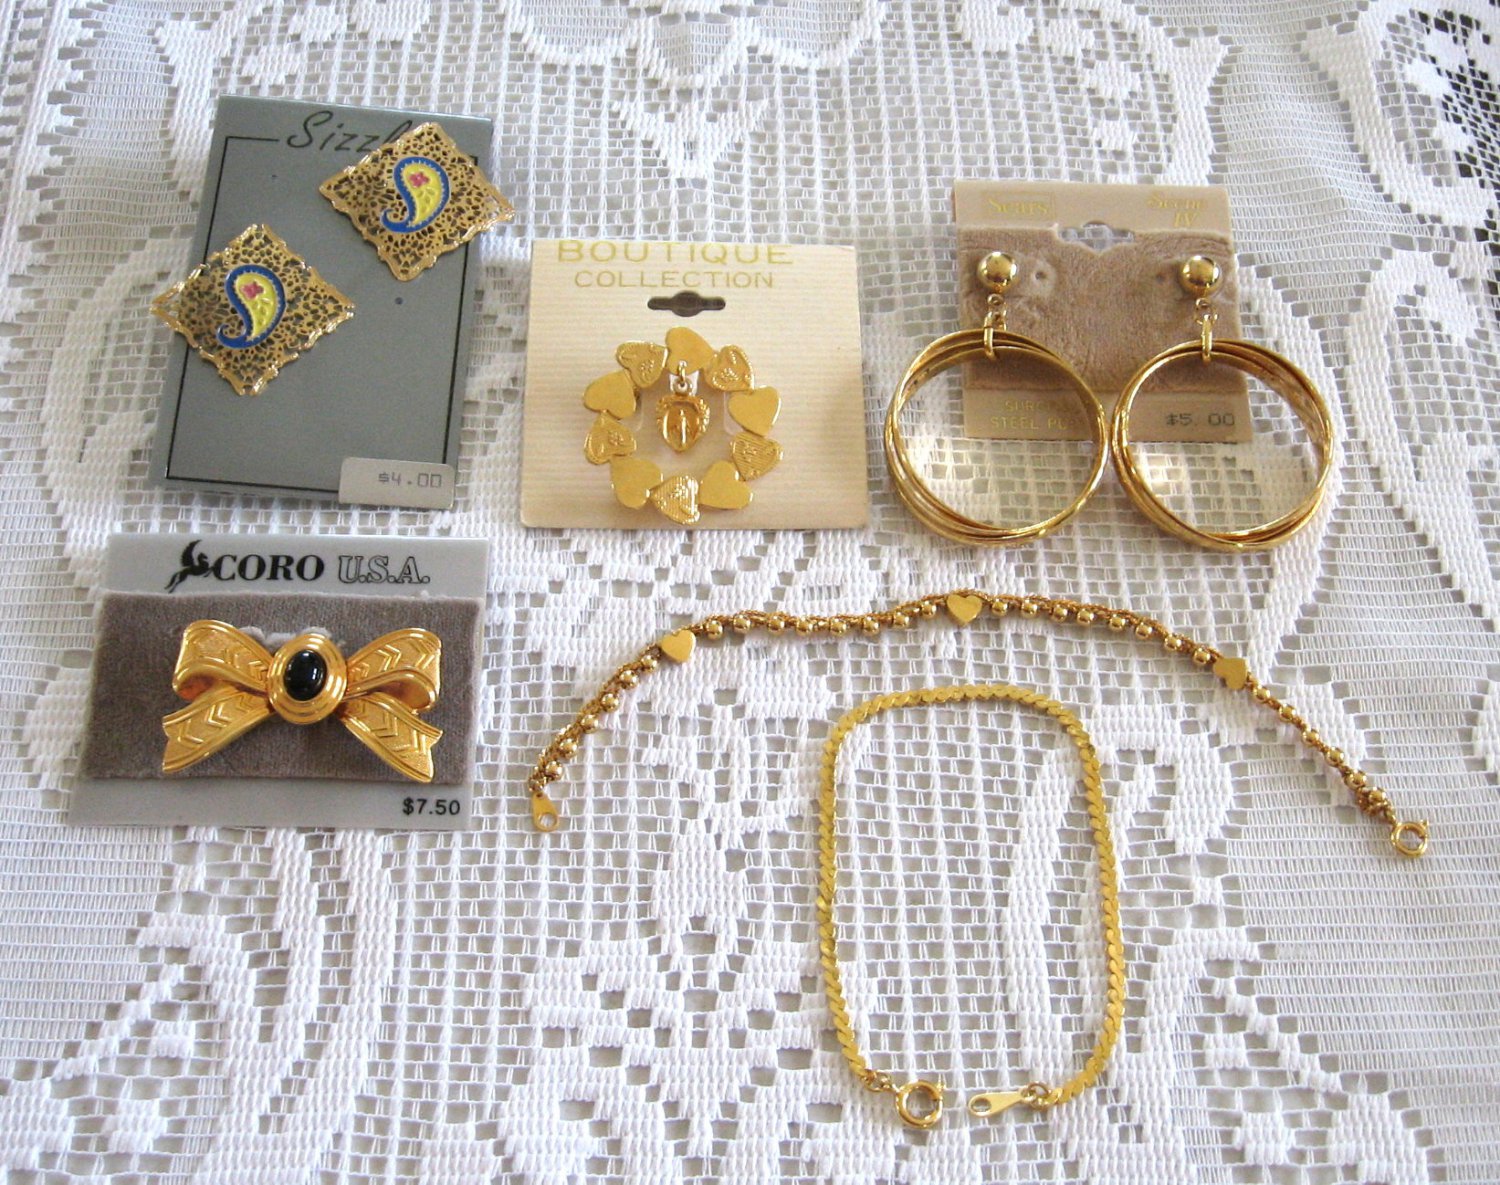 6 Pieces 2 Brooch Pins 2 Pair Pierced Earrings 2 Bracelets Coro & Sears Vintage Jewelry 1970s